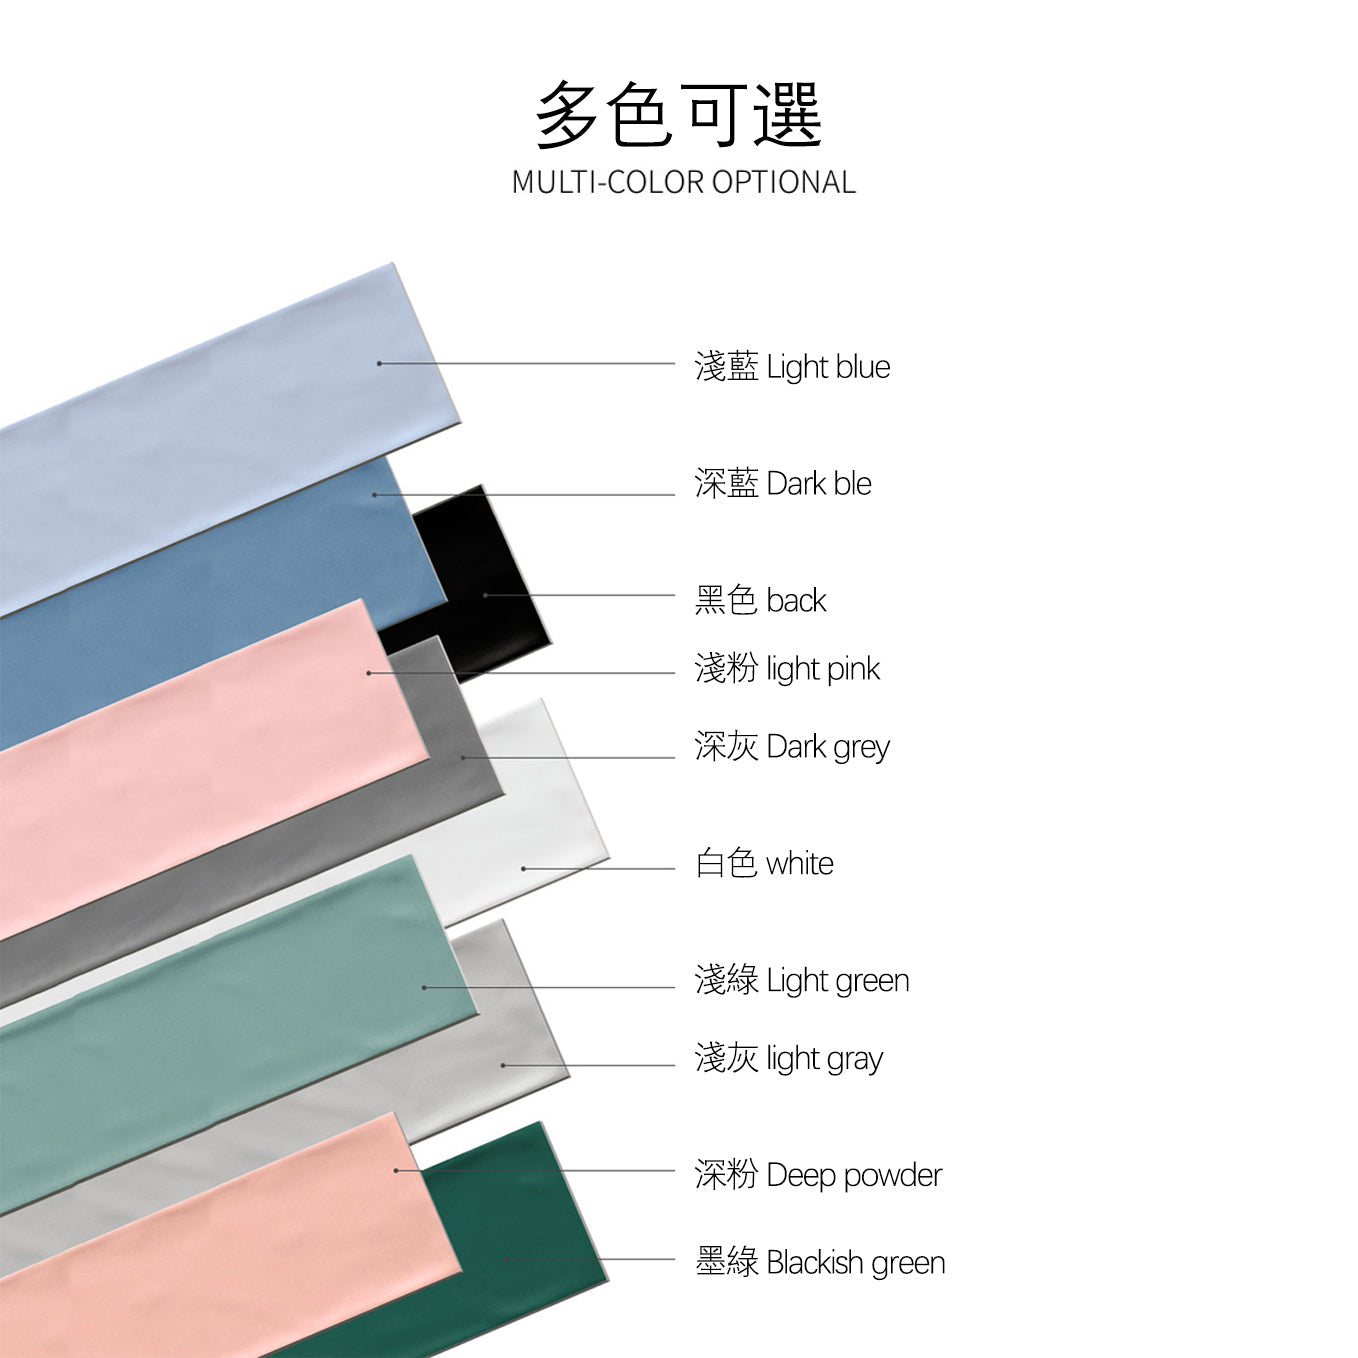 中國佛山瓷磚 China Foshan Basics 馬卡龍多彩純色啞光墻磚 MKL003淺綠10×30cm